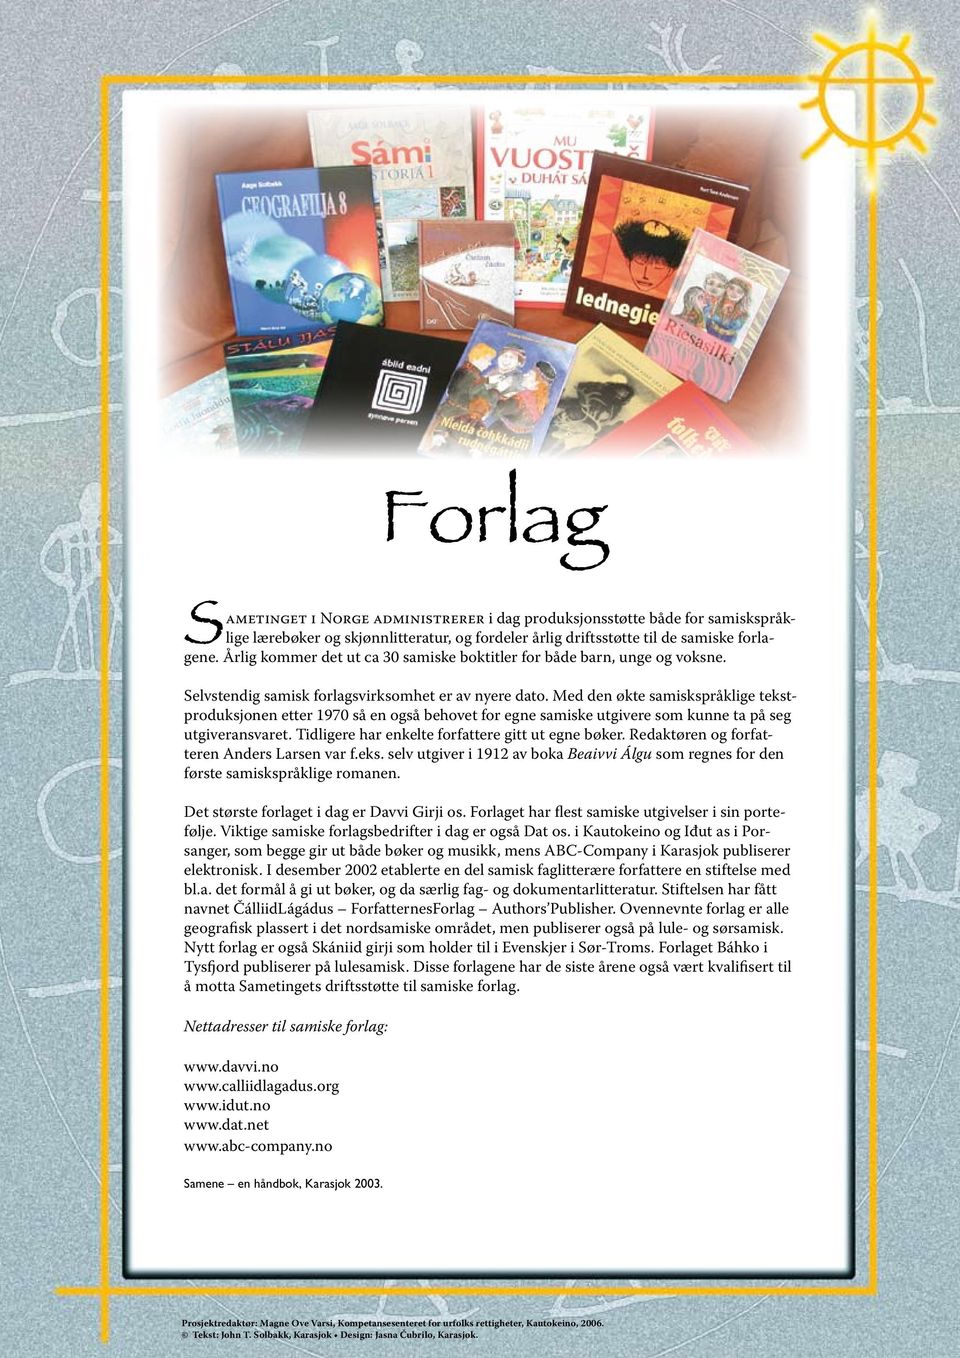 Med den økte samiskspråklige tekstproduksjonen etter 1970 så en også behovet for egne samiske utgivere som kunne ta på seg utgiveransvaret. Tidligere har enkelte forfattere gitt ut egne bøker.